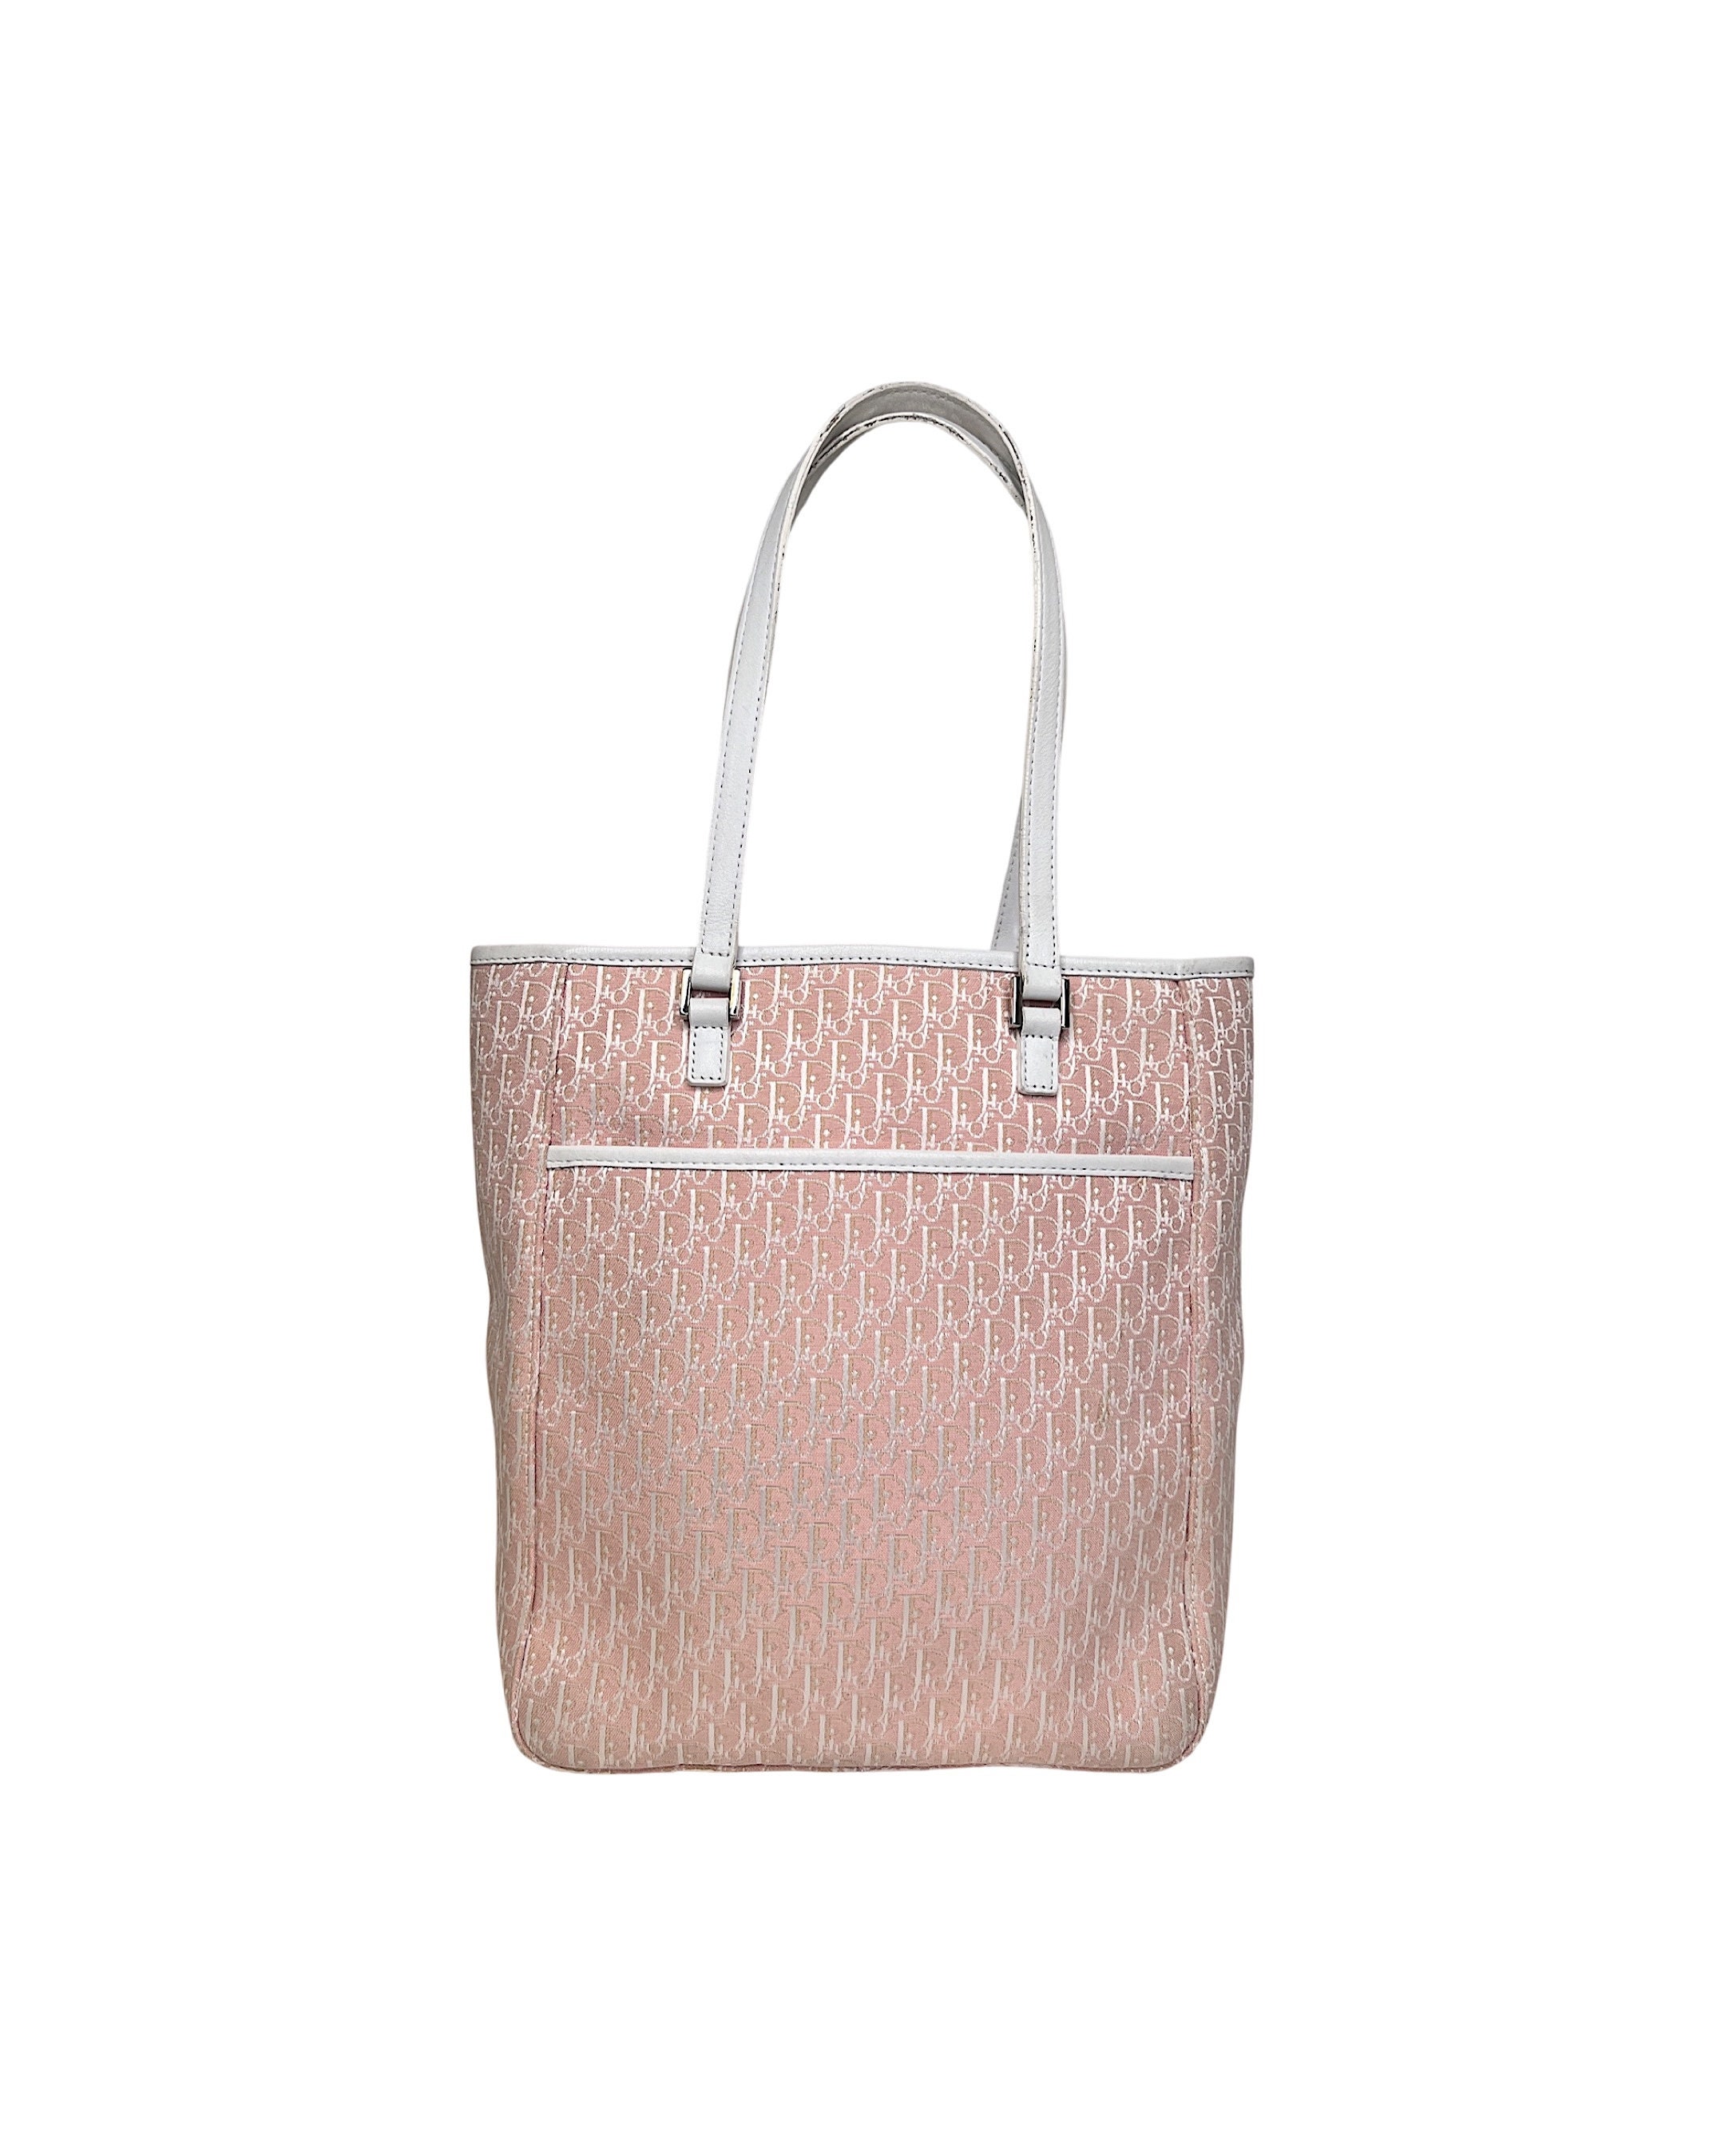 Best Deals for Pink Dior Vintage Bag